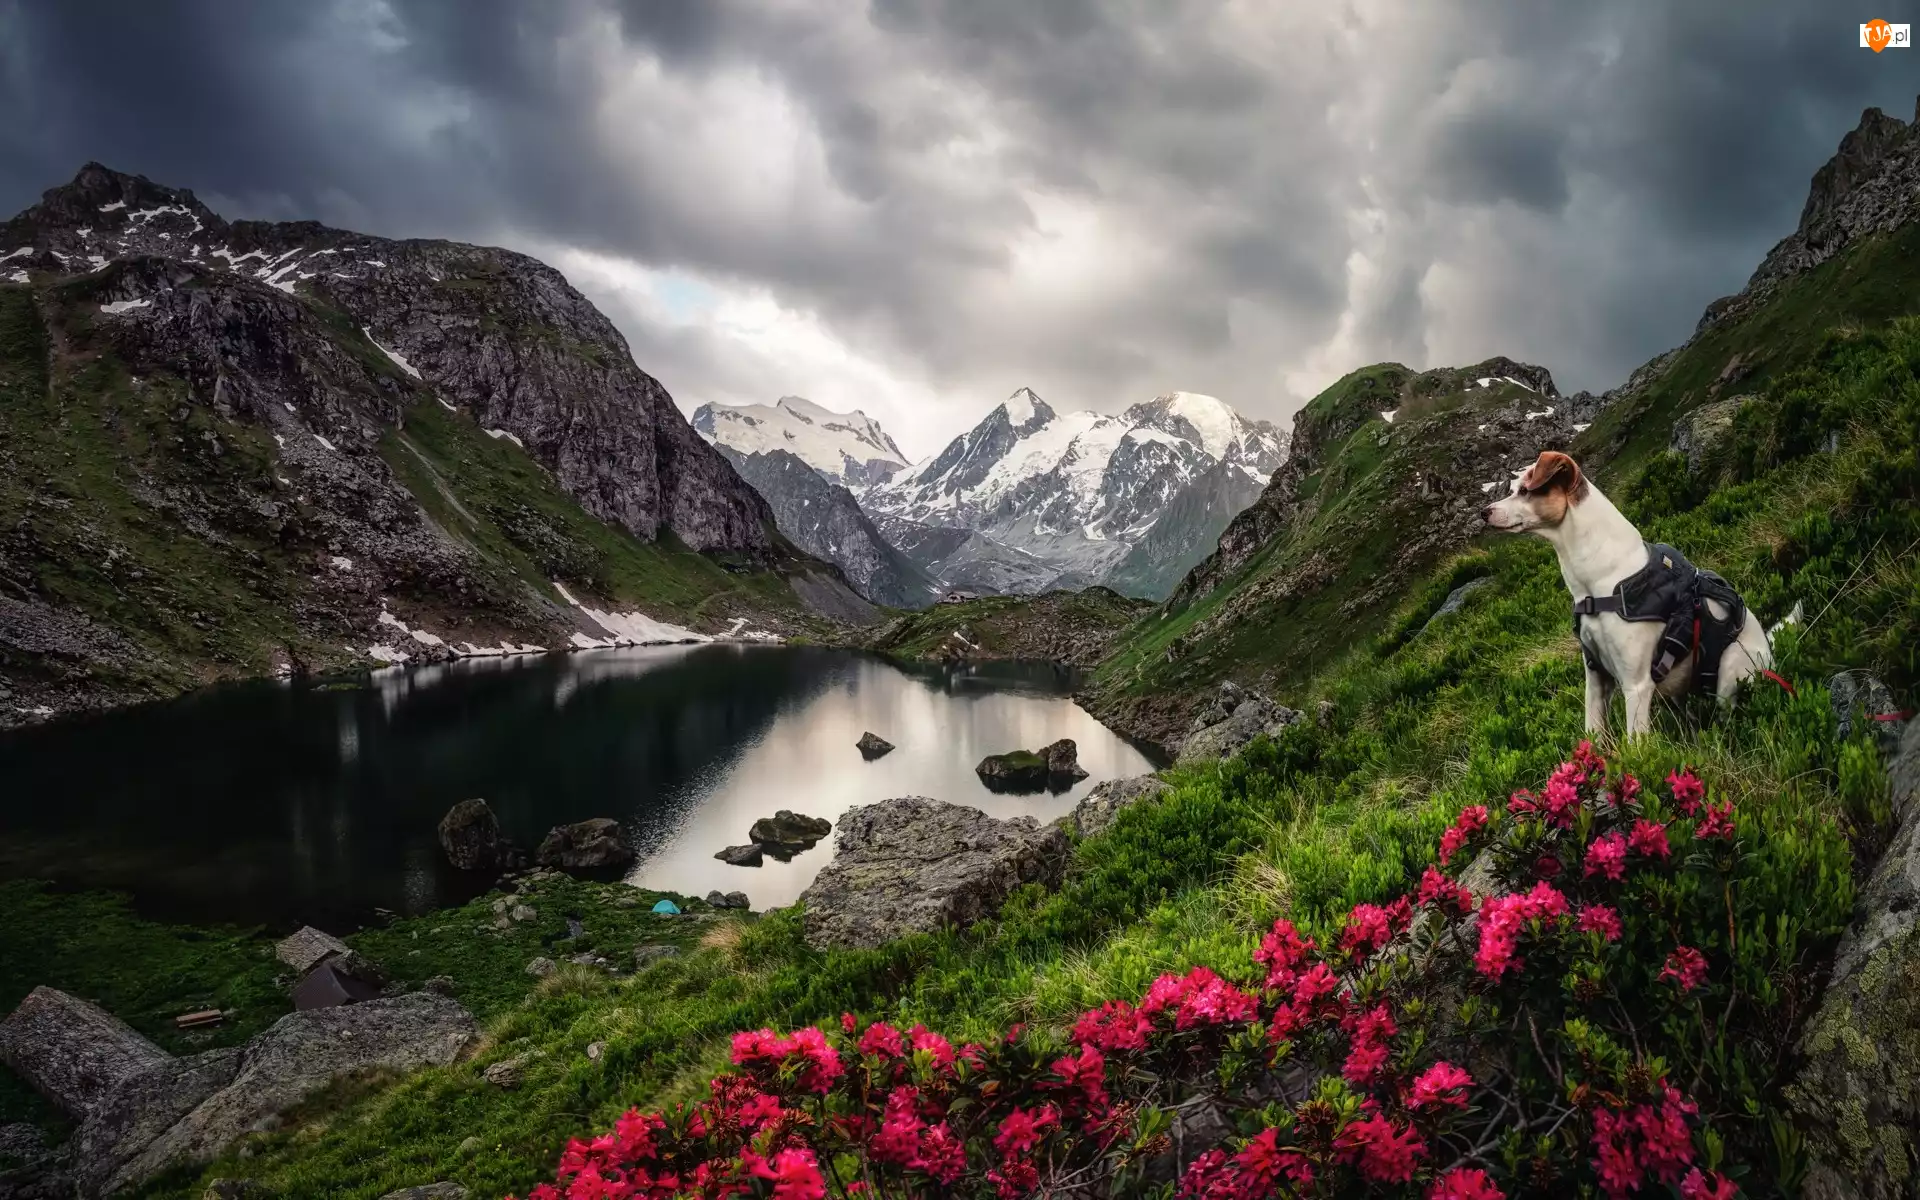 Jezioro, Góry, Kwiaty, Chmury, Pies, Różaneczniki